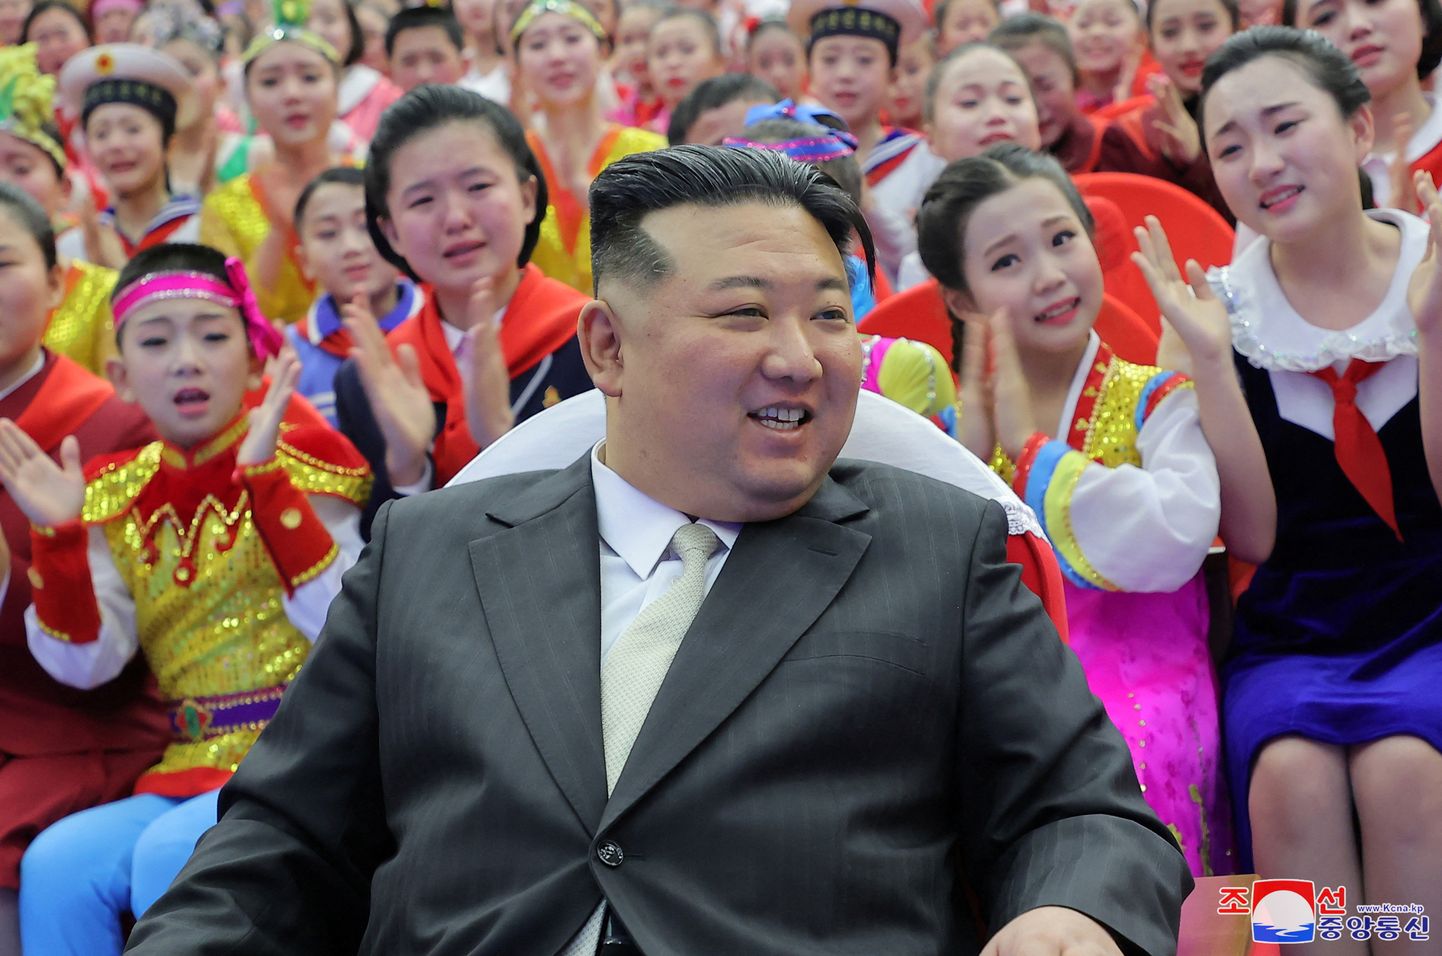 Põhja-Korea liider Kim Jong-un aastavahetuspeol koos õpilastega.